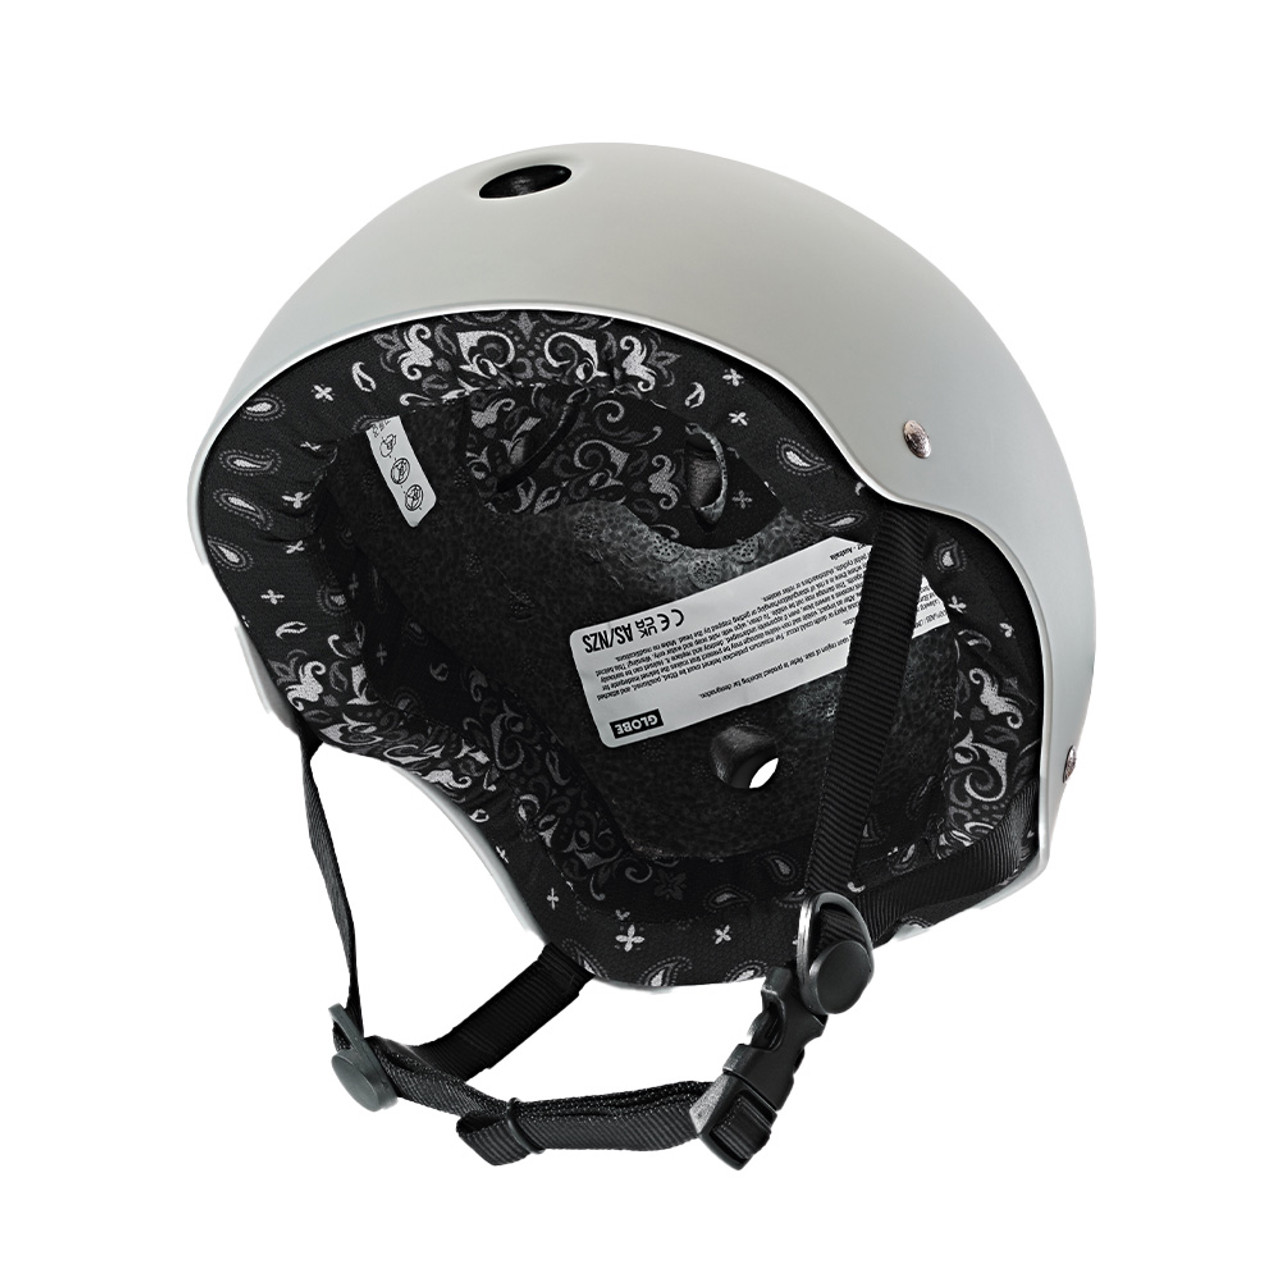 GLOBE Goodstock Certified Helmet Matte Gun Metal